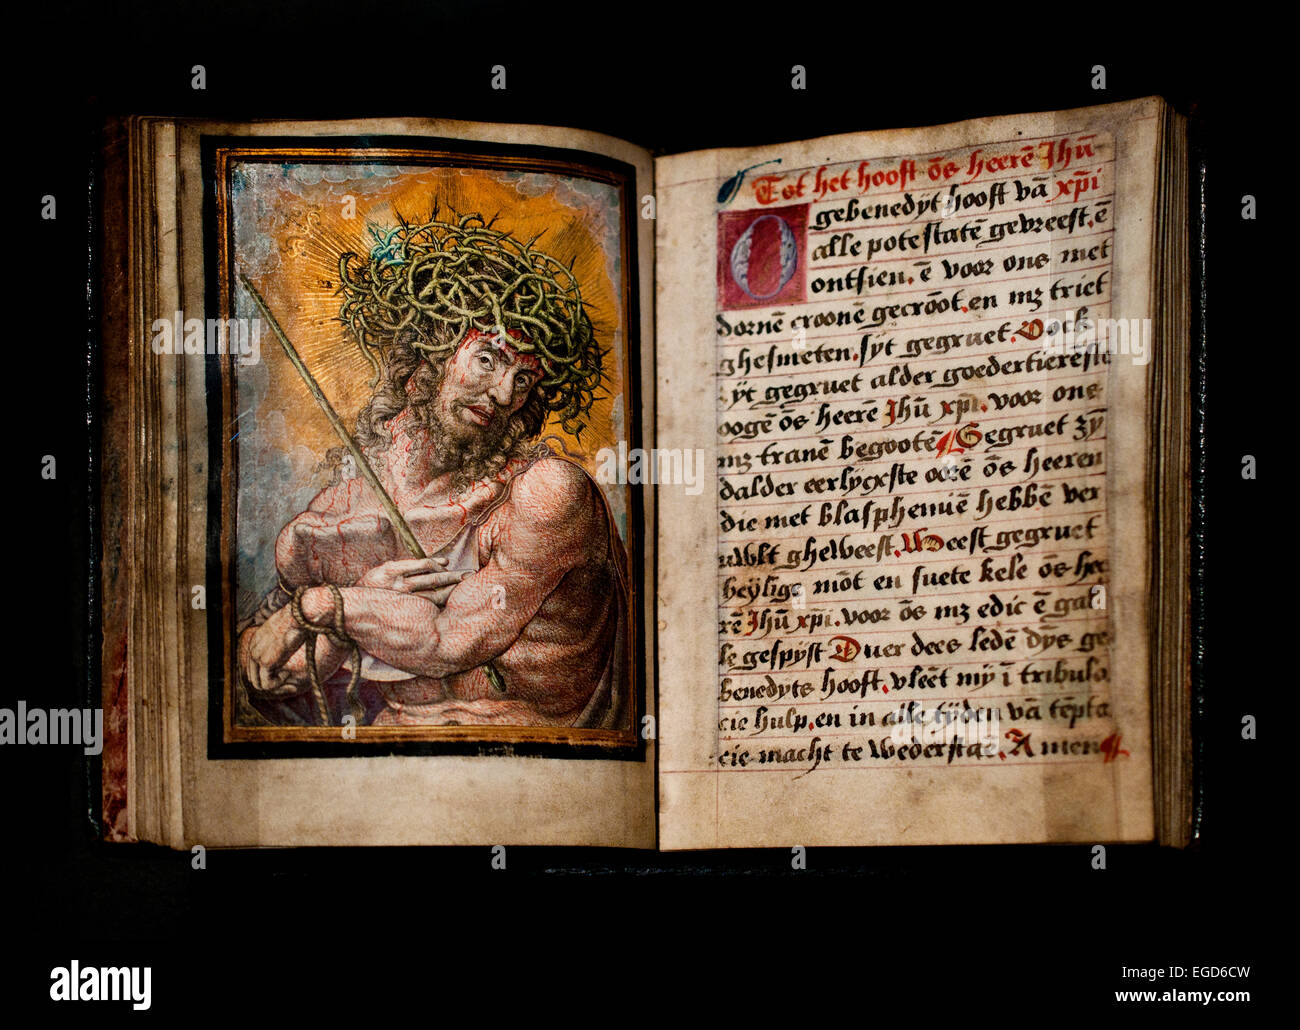 Le Christ comme l'Homme des Douleurs 1525 Frans van Espleghem Pays-bas néerlandais Crabbe Banque D'Images